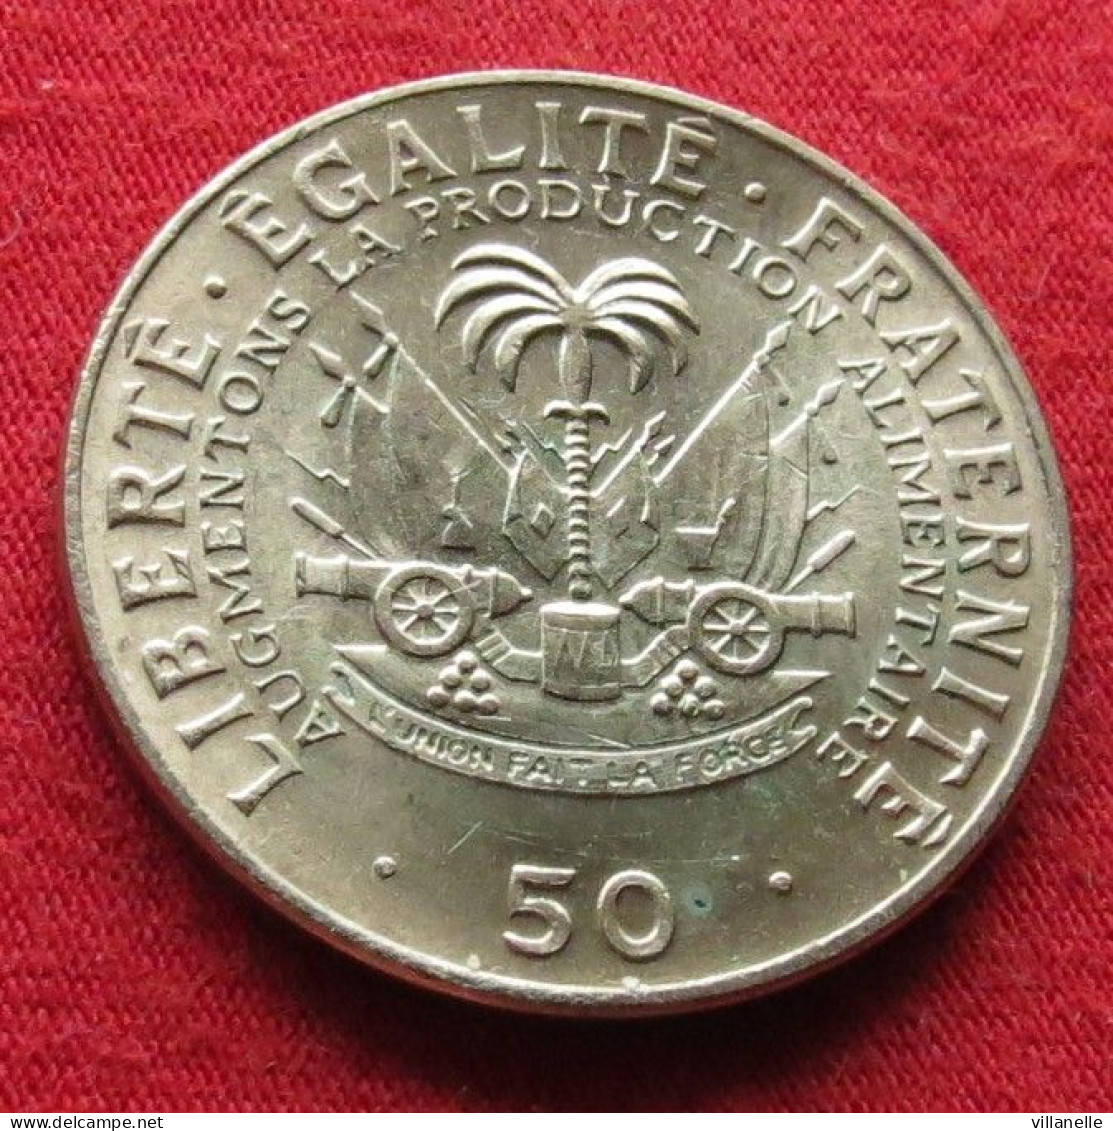 Haiti 50 Centimes 1972 FAO F.a.o.UNC ºº - Haïti